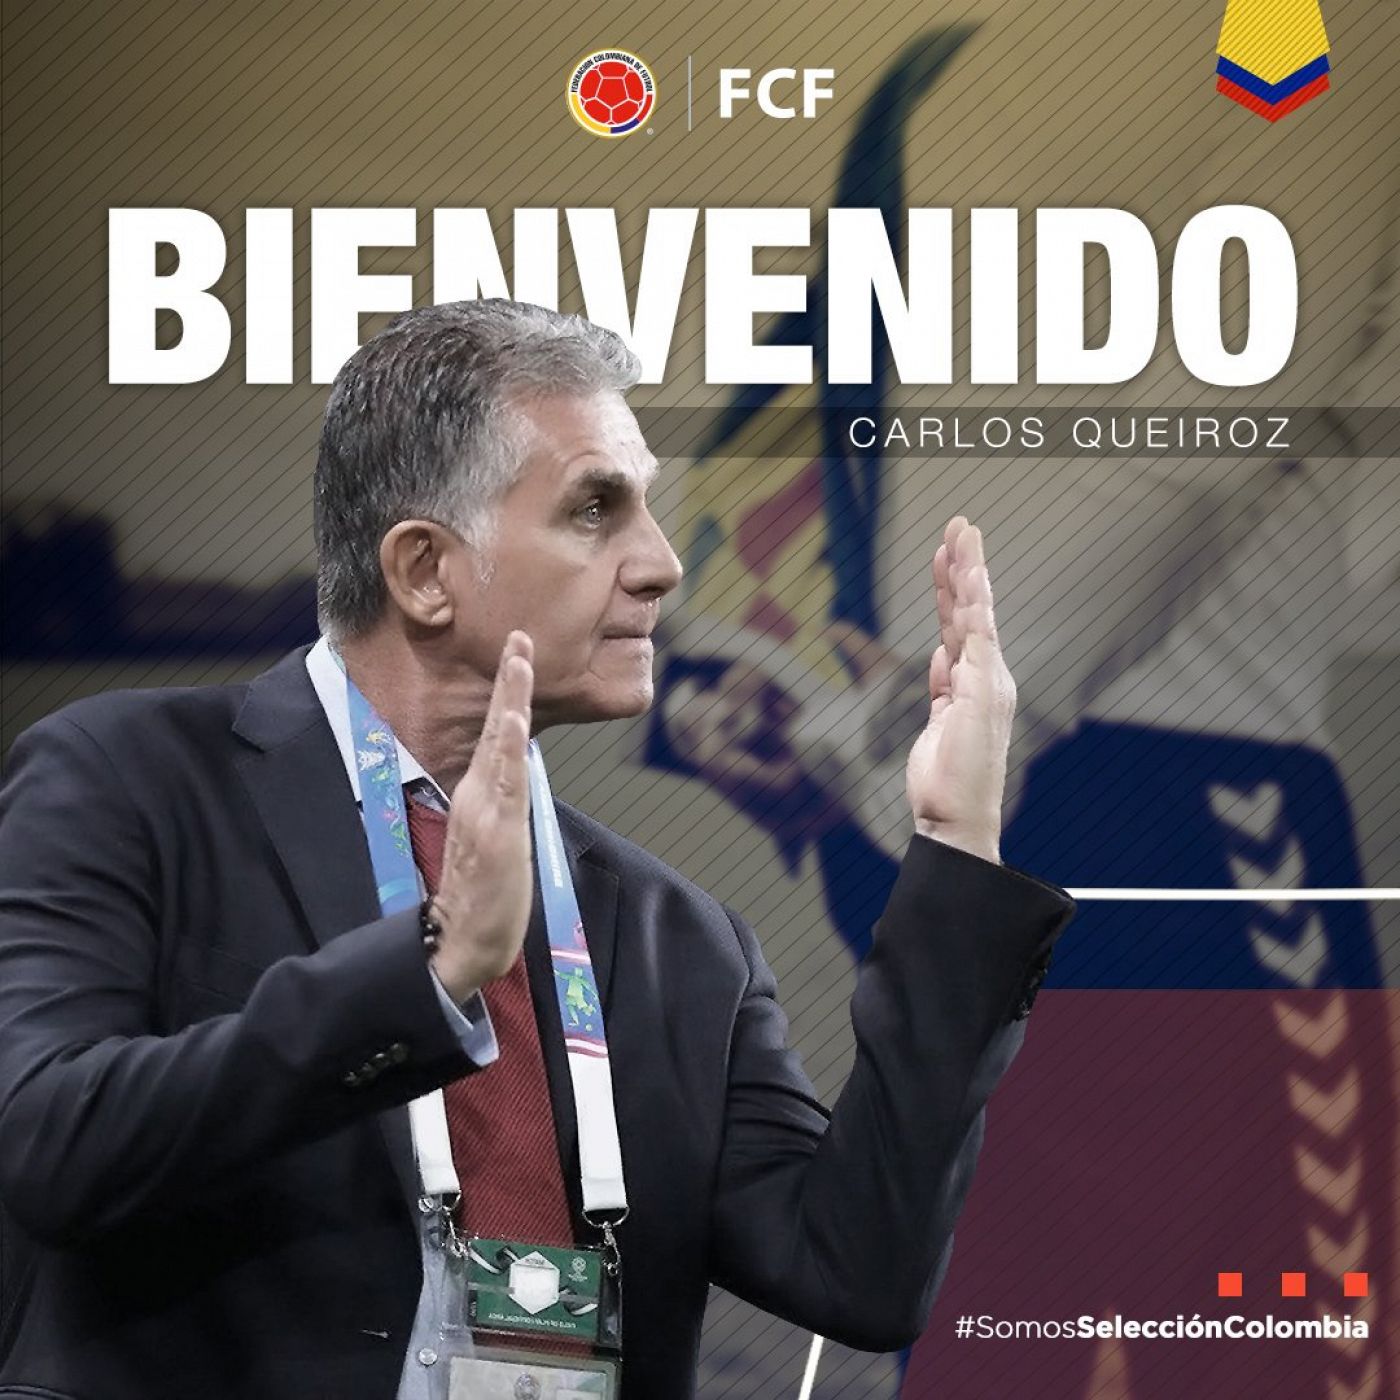 Imagen publicada por la federación colombiana para anunciar el fichaje de Queiroz.